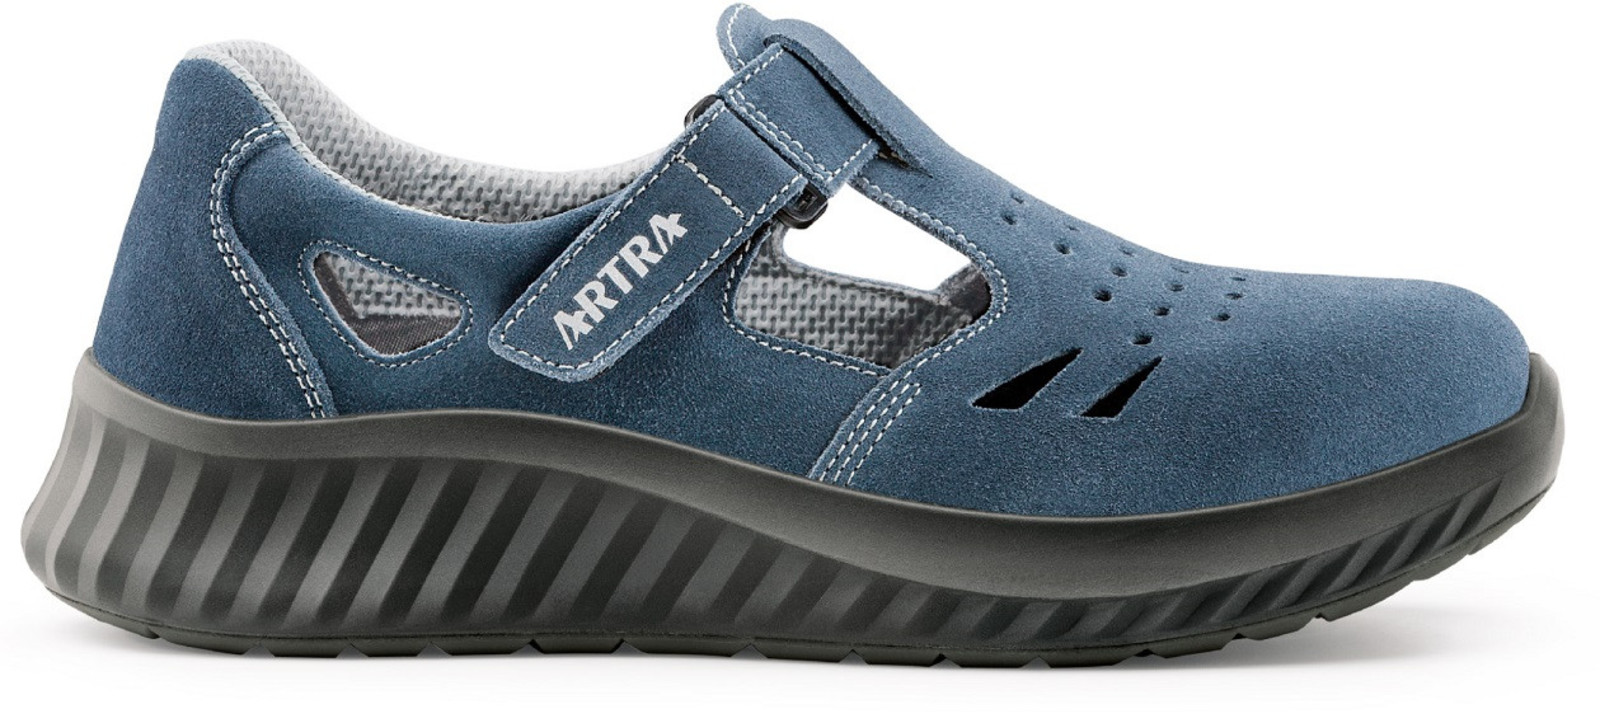 Bezpečnostné sandále Artra Armen 9007 9360 S1 - veľkosť: 36, farba: modrá